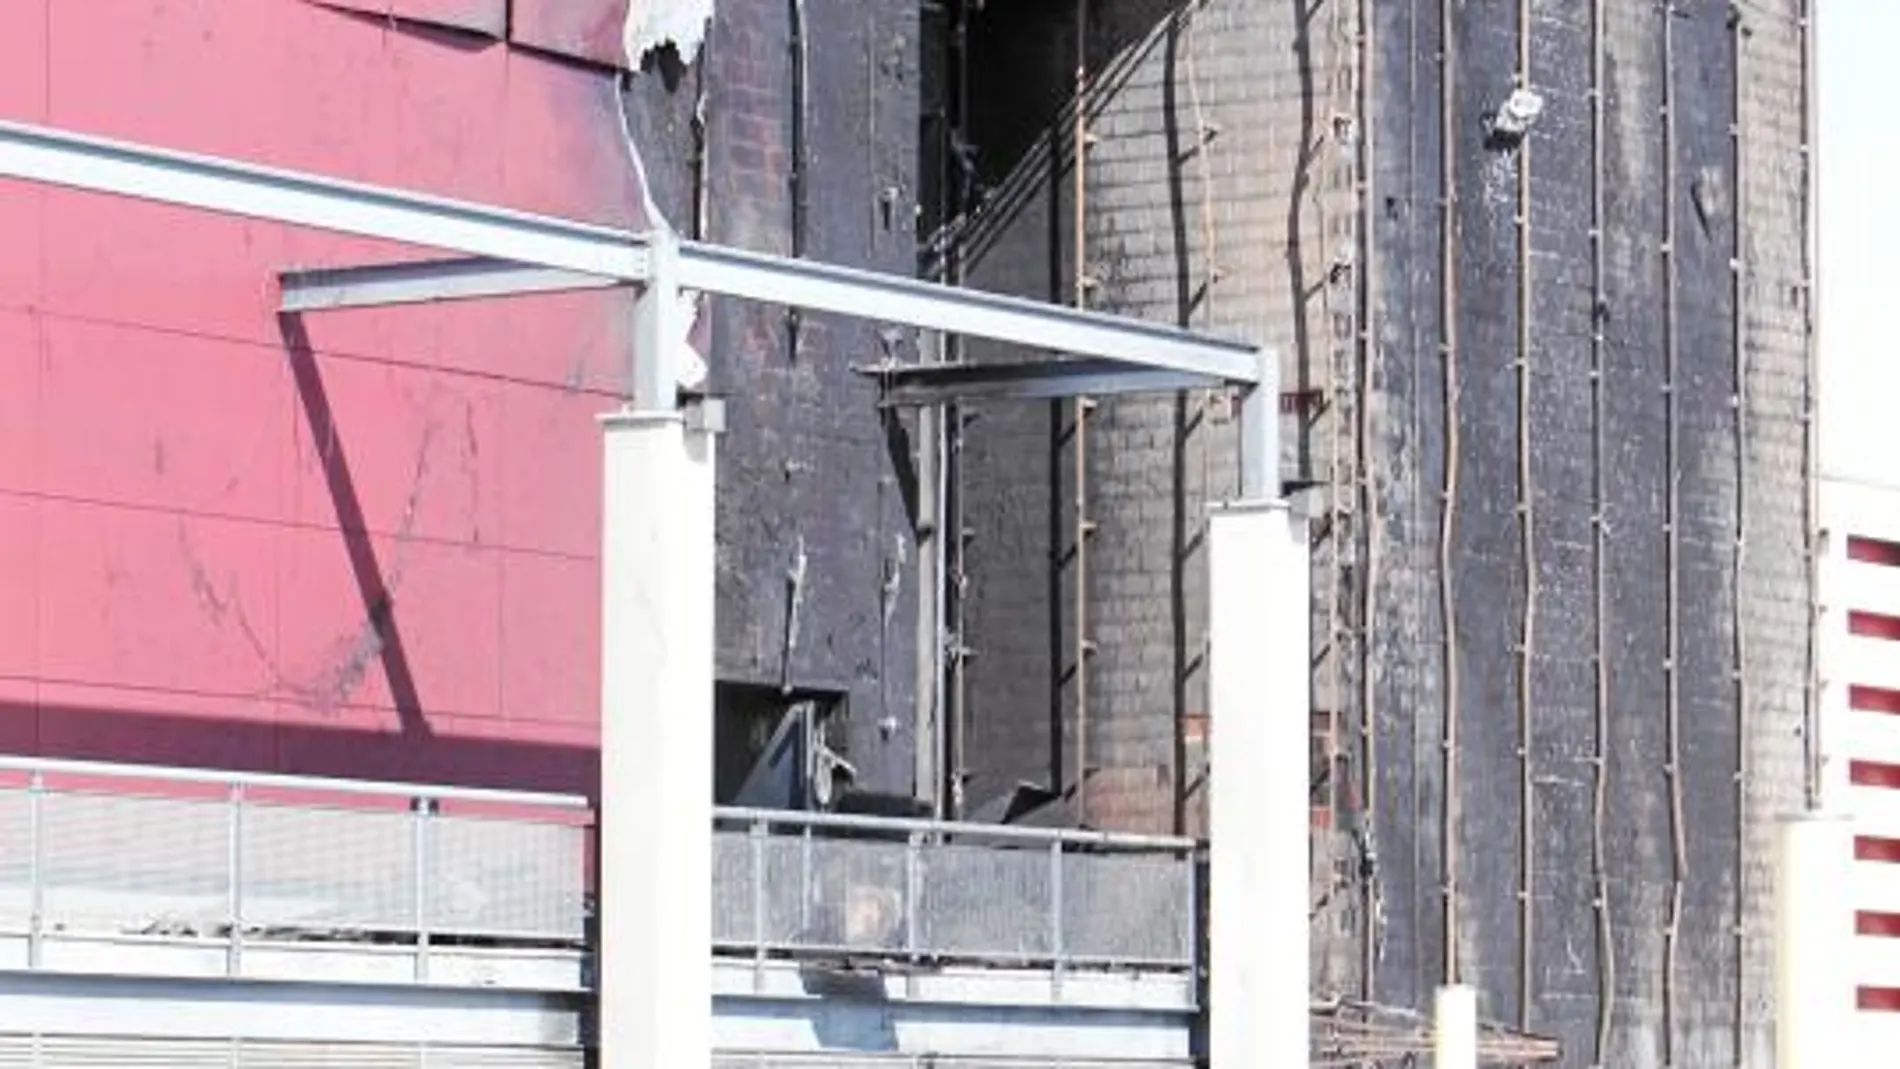 Los testigos apuntaron como origen del fuego a un cortocircuito en el cableado de una de las vallas publicitarias de la fachada